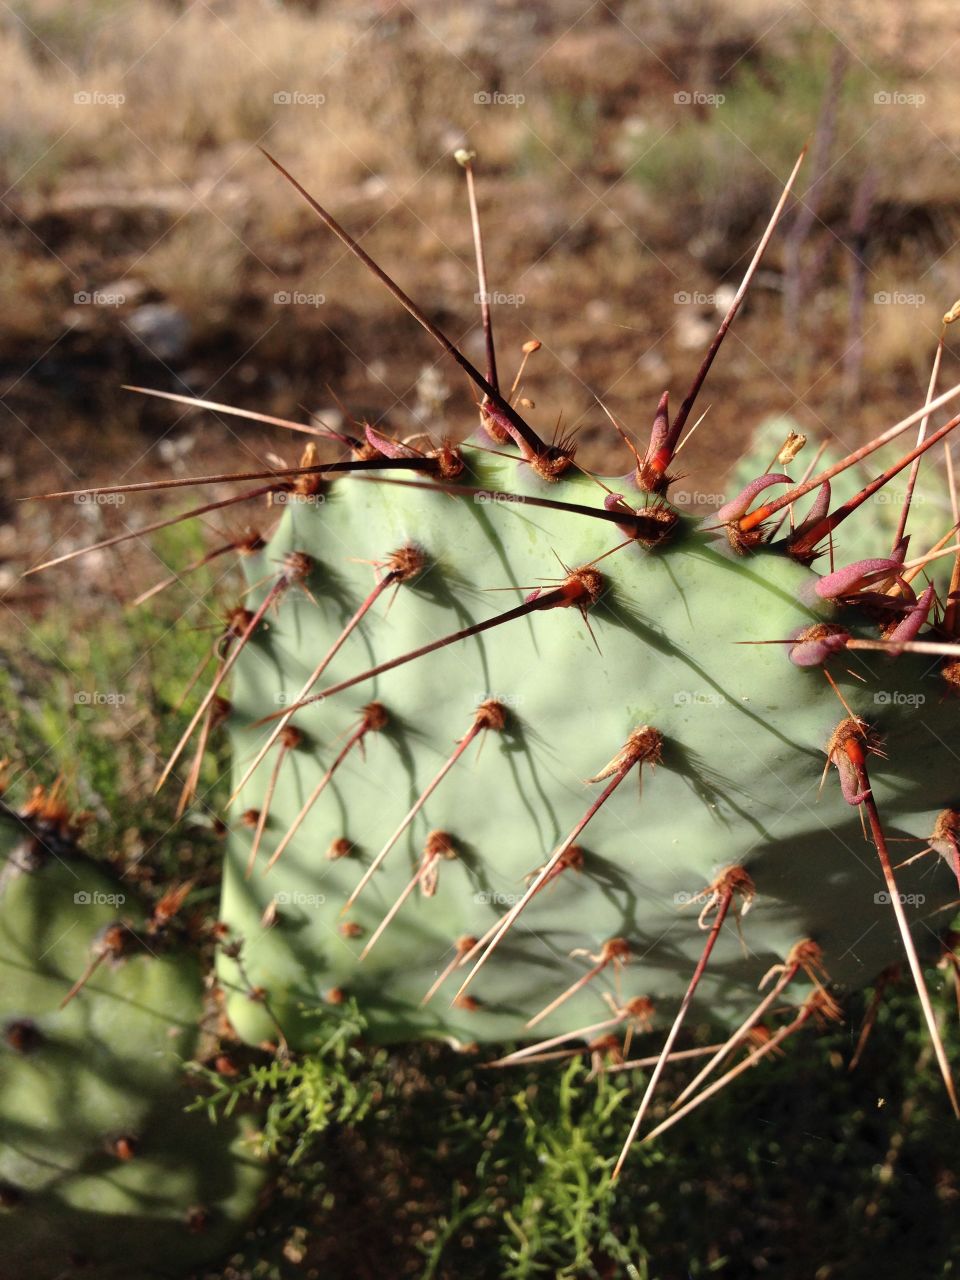 Cactus ant. Tucson AZ 